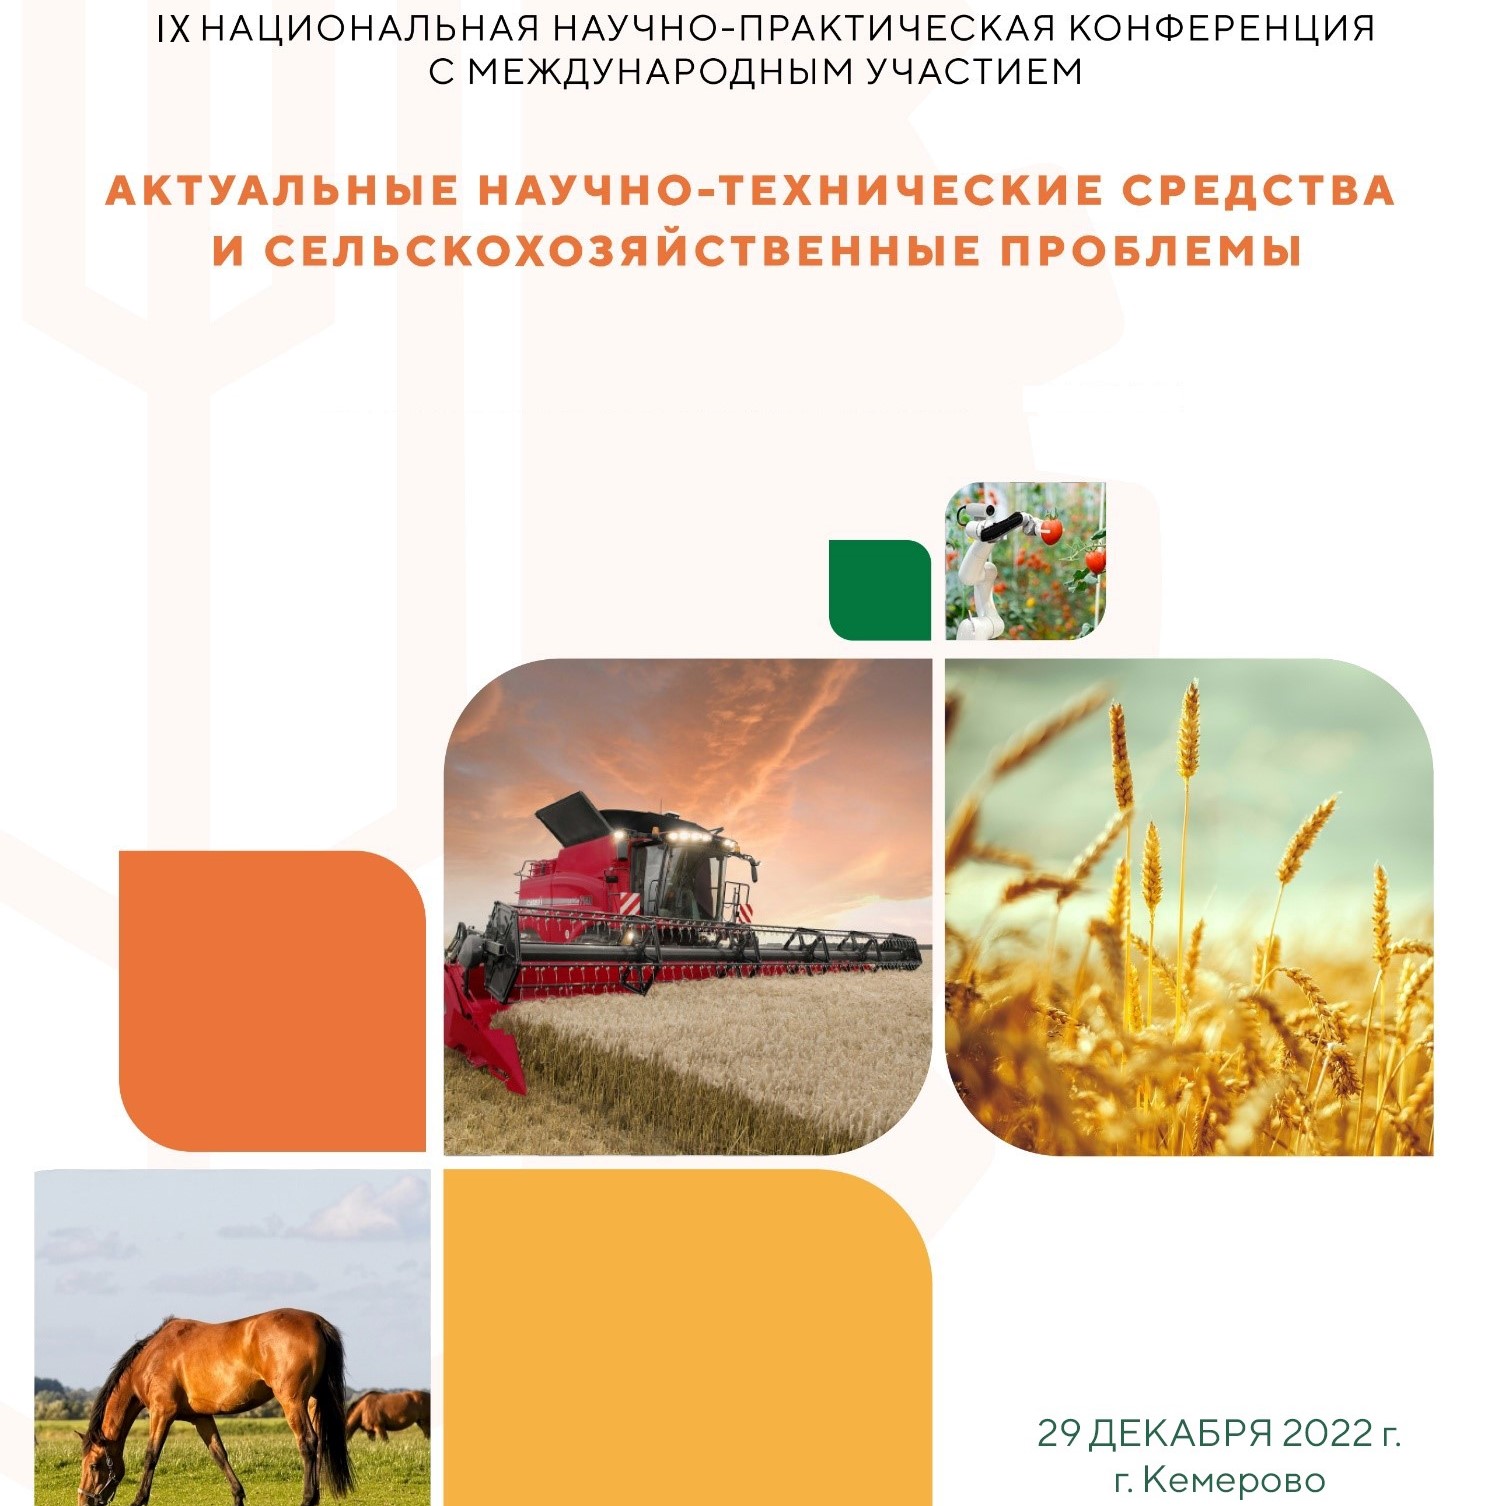 IX Национальная научно-практическая конференция с международным участием «Актуальные научно-технические средства и сельскохозяйственные проблемы»